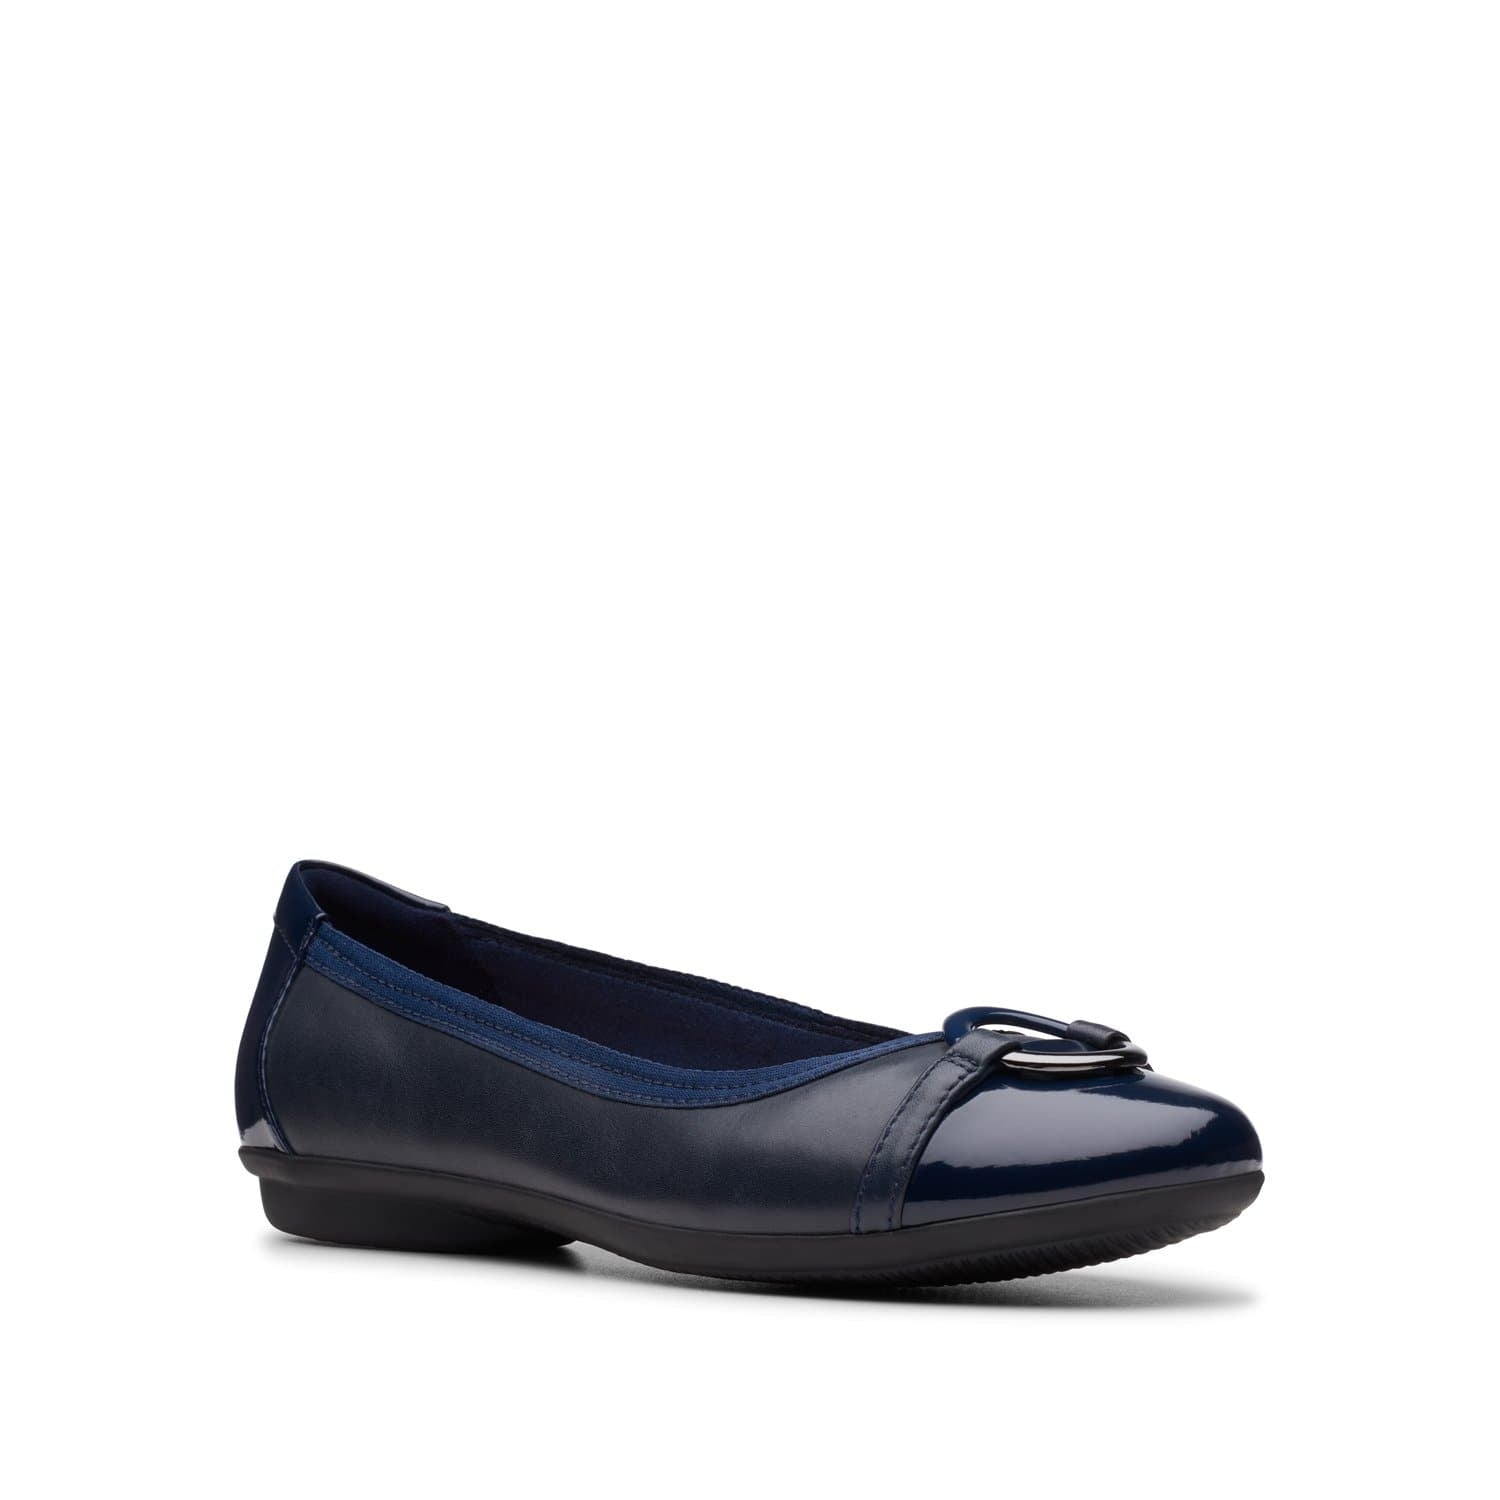 Clarks-Gracelin-Wind-Women's-Shoes-Navy-26145717